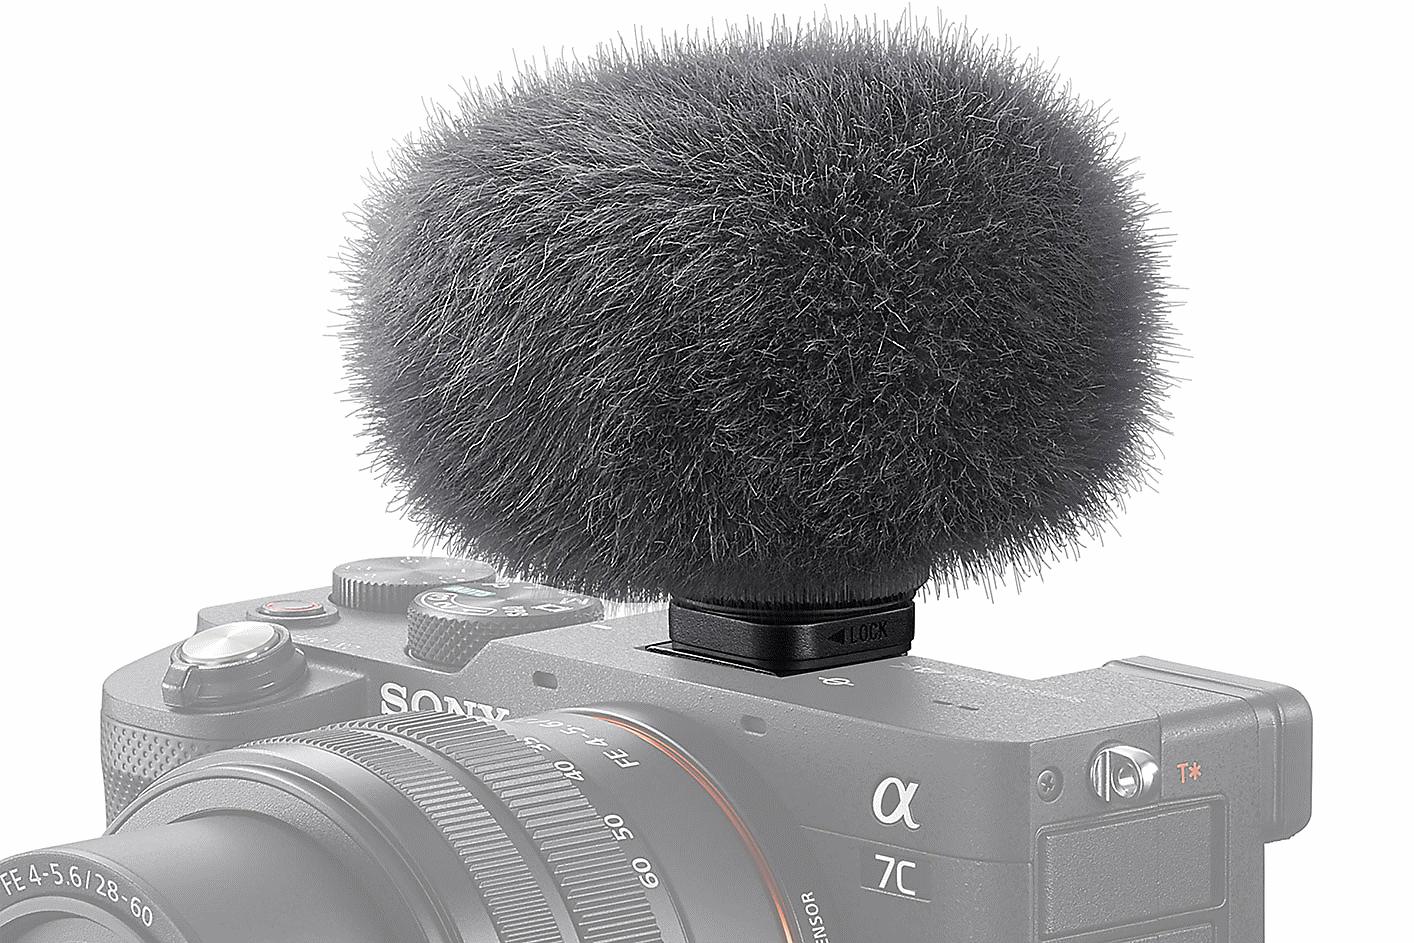 Fotografie mikrofonu ECM-G1 připojeného k fotoaparátu a opatřeného kožešinovou ochranou proti větru.